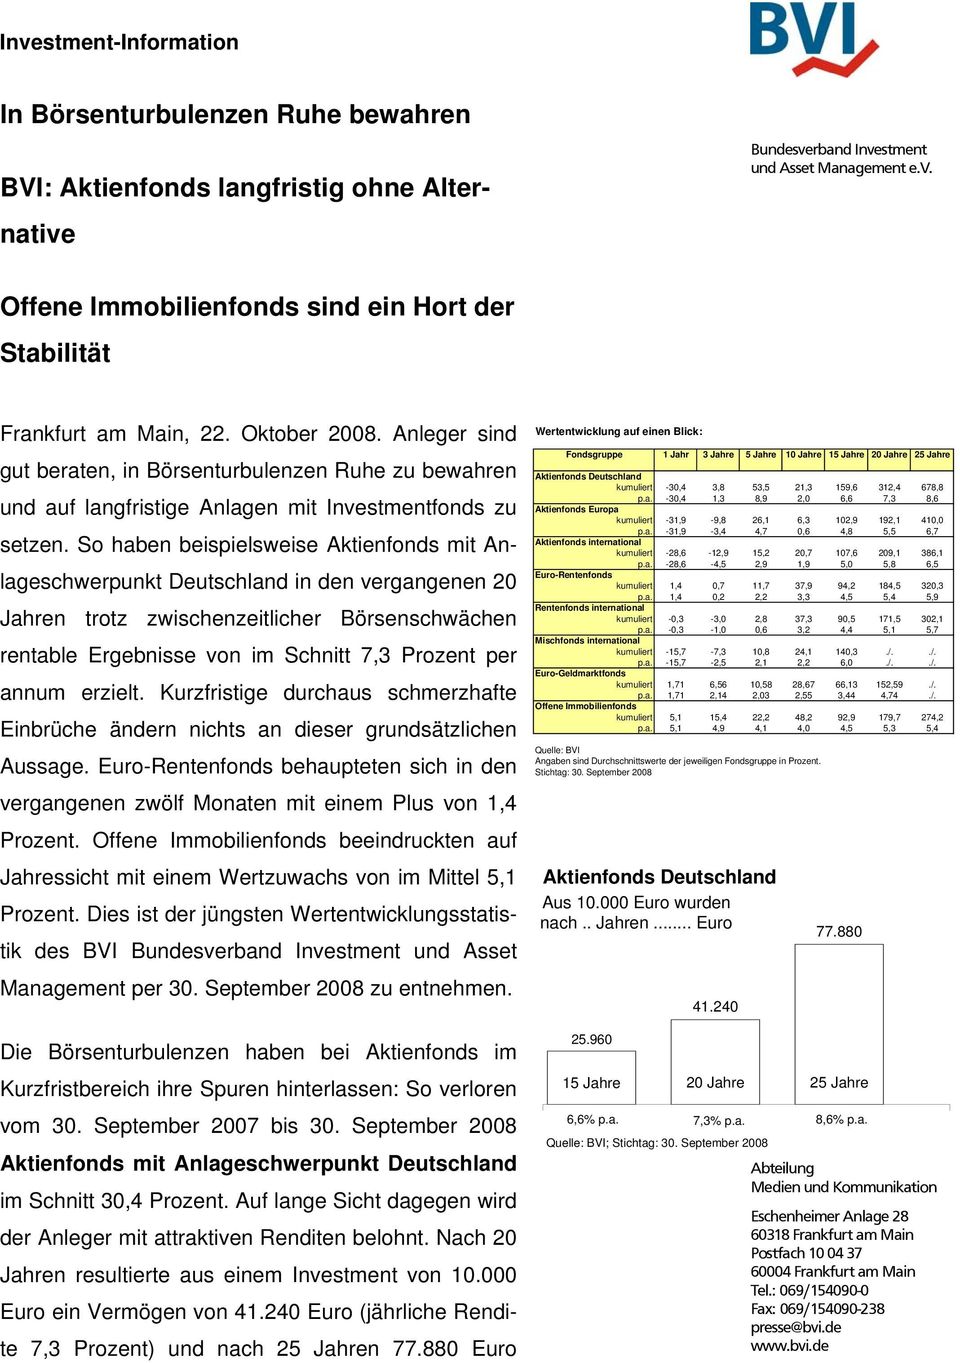 So haben beispielsweise Aktienfonds mit Anlageschwerpunkt Deutschland in den vergangenen 20 Jahren trotz zwischenzeitlicher Börsenschwächen rentable Ergebnisse von im Schnitt 7,3 Prozent per annum